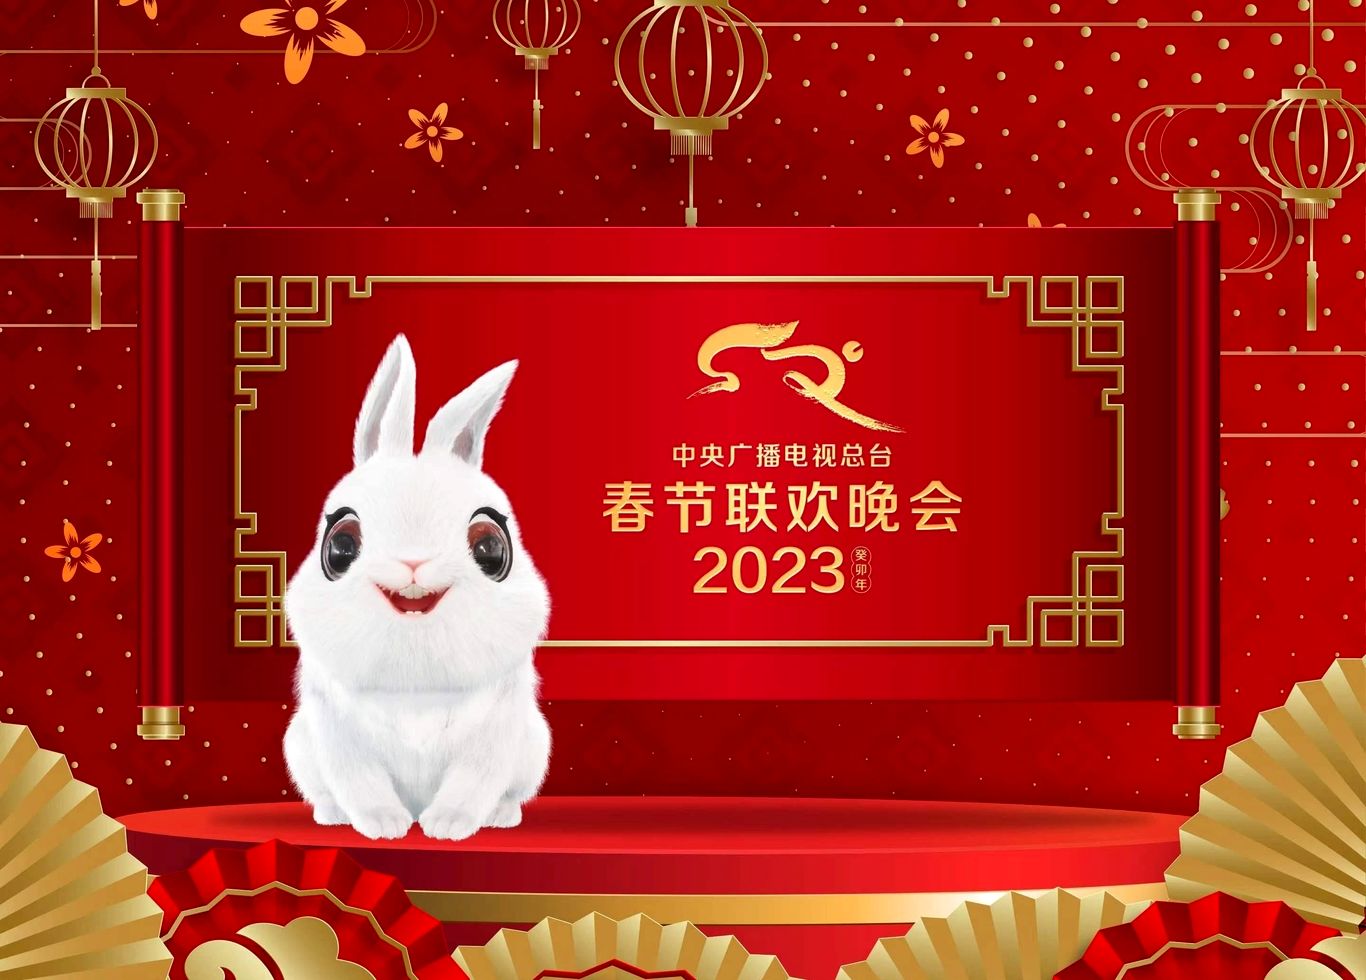 طالع بینی چینی؛ ۲۰۲۳ برای چه کسانی سال خوبی خواهد بود؟